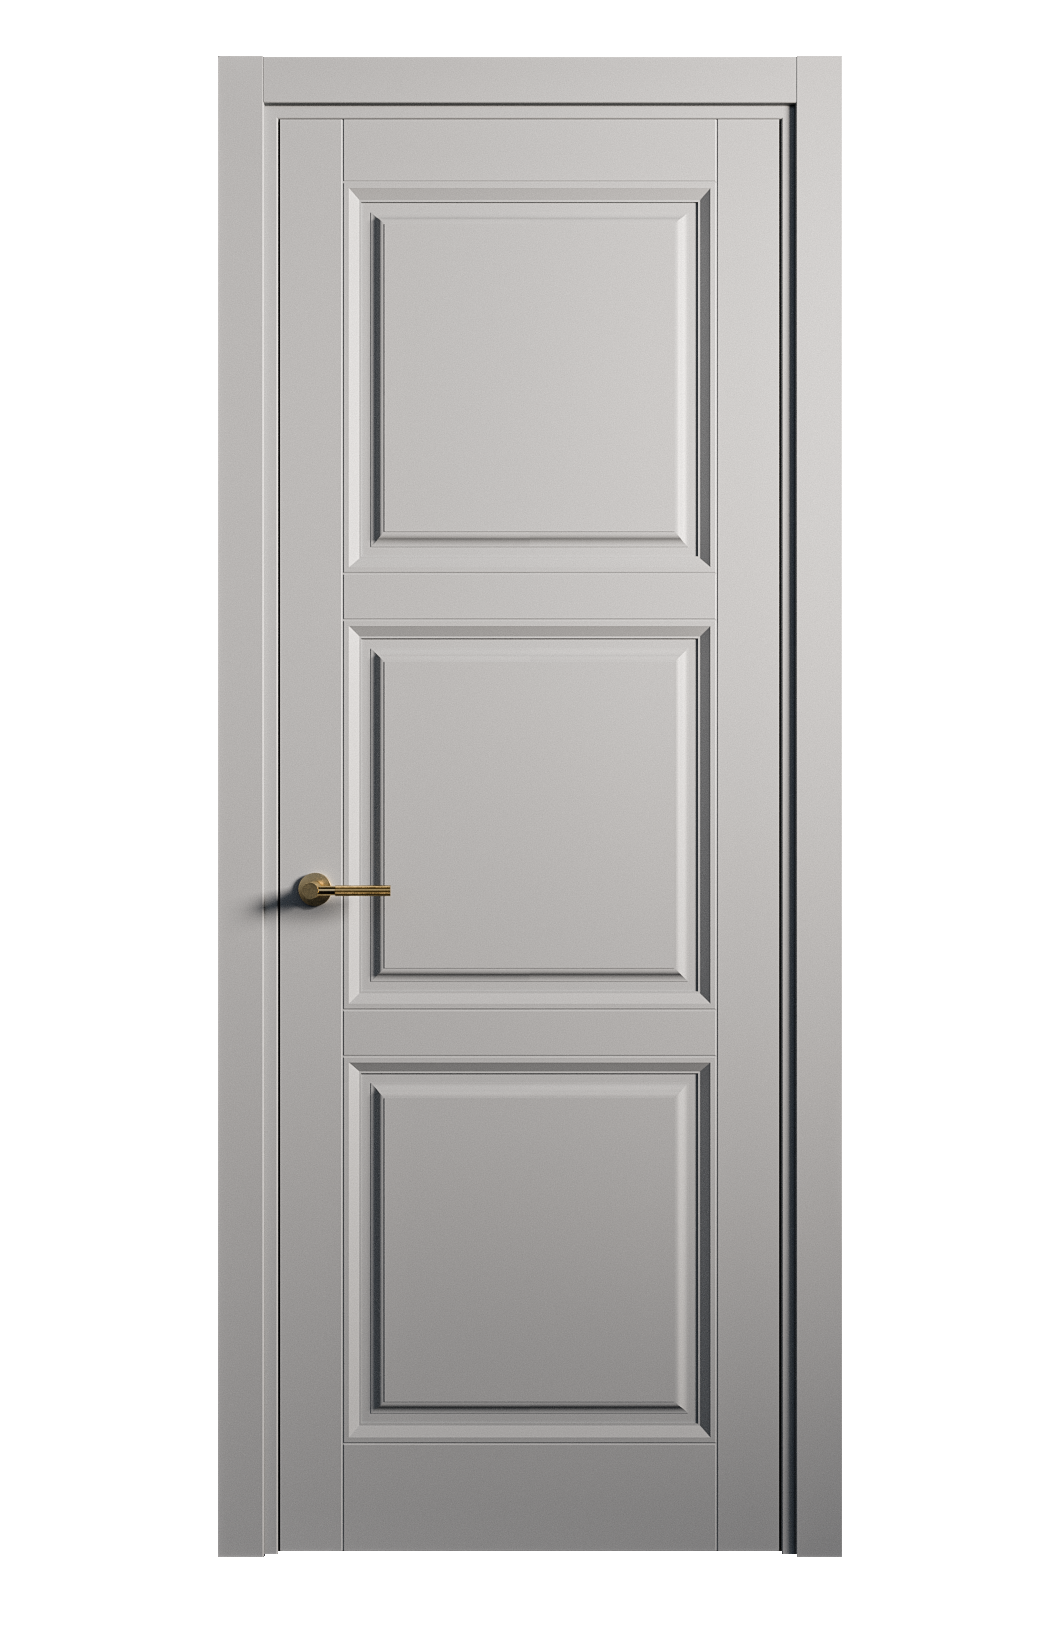 Межкомнатная дверь Venezia-3 глухая эмаль ral 7040 25770